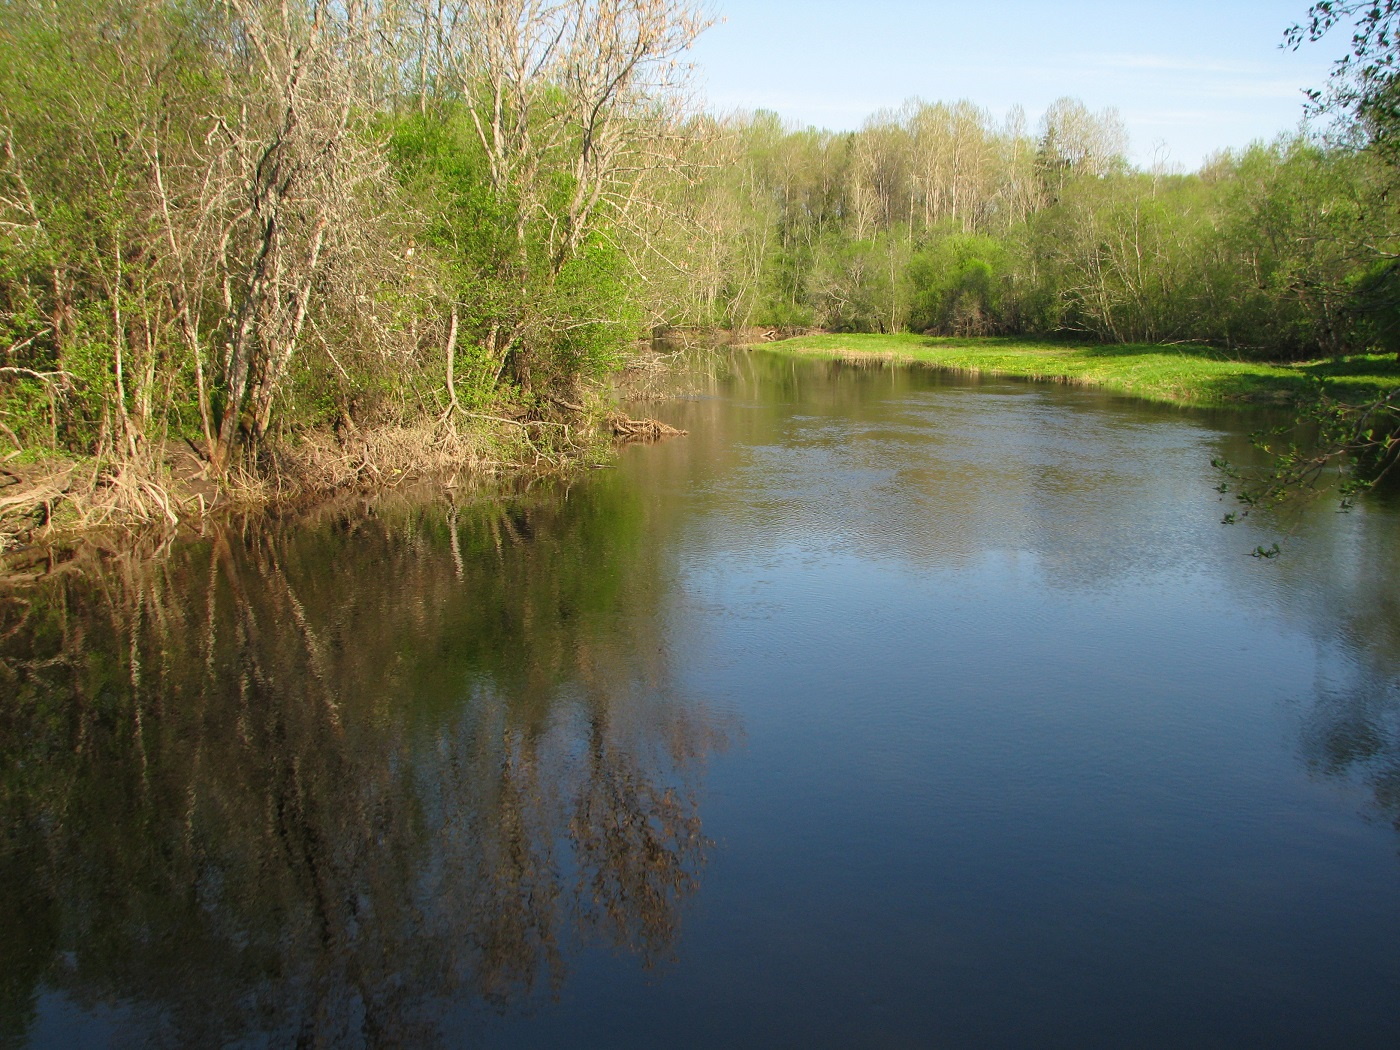 Spring by the Pedja River in Alam-Pedja